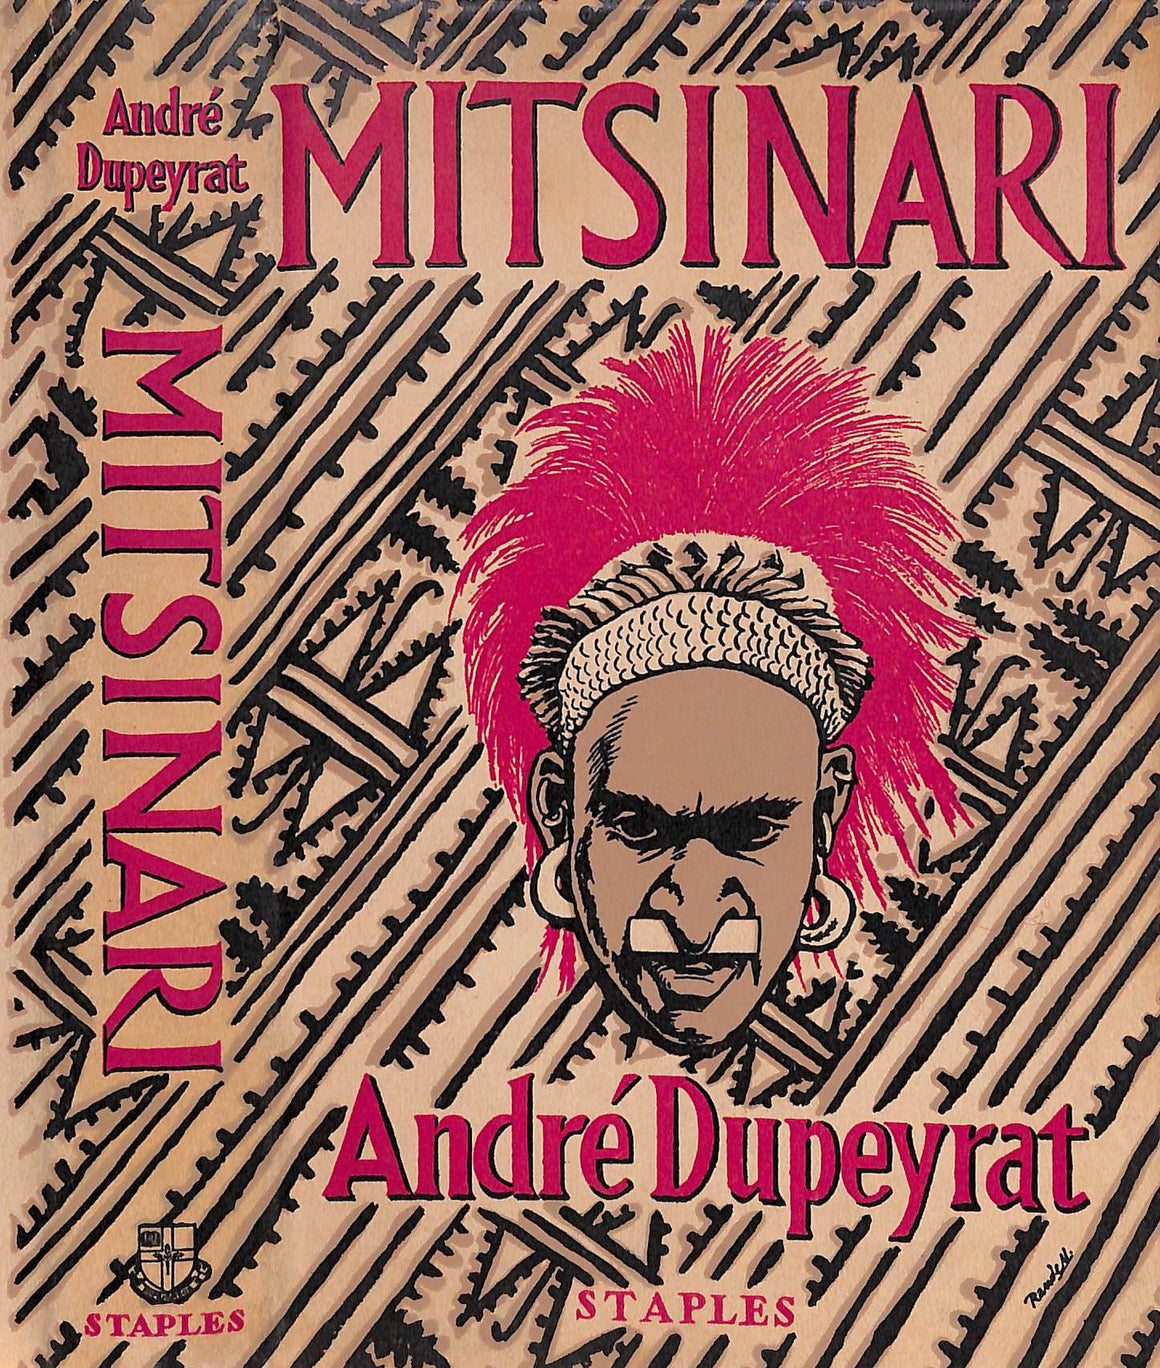 "Mitsinari" 1955 DUPEYRAT, Andre